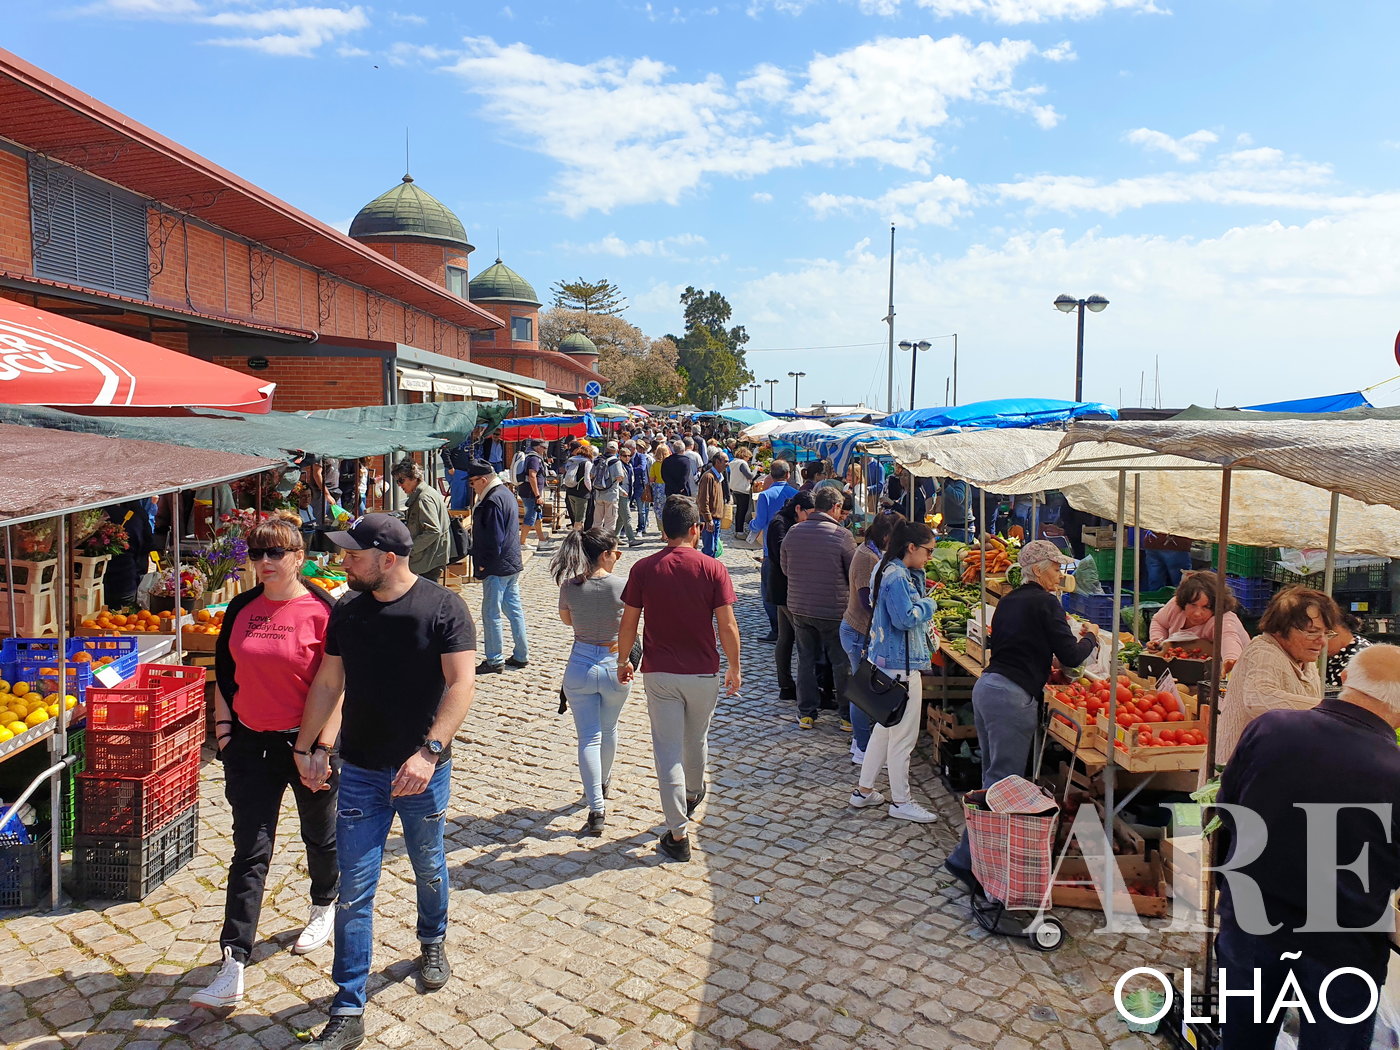 Barras de produtos locais aos sábados no exterior do Mercado de Olhão